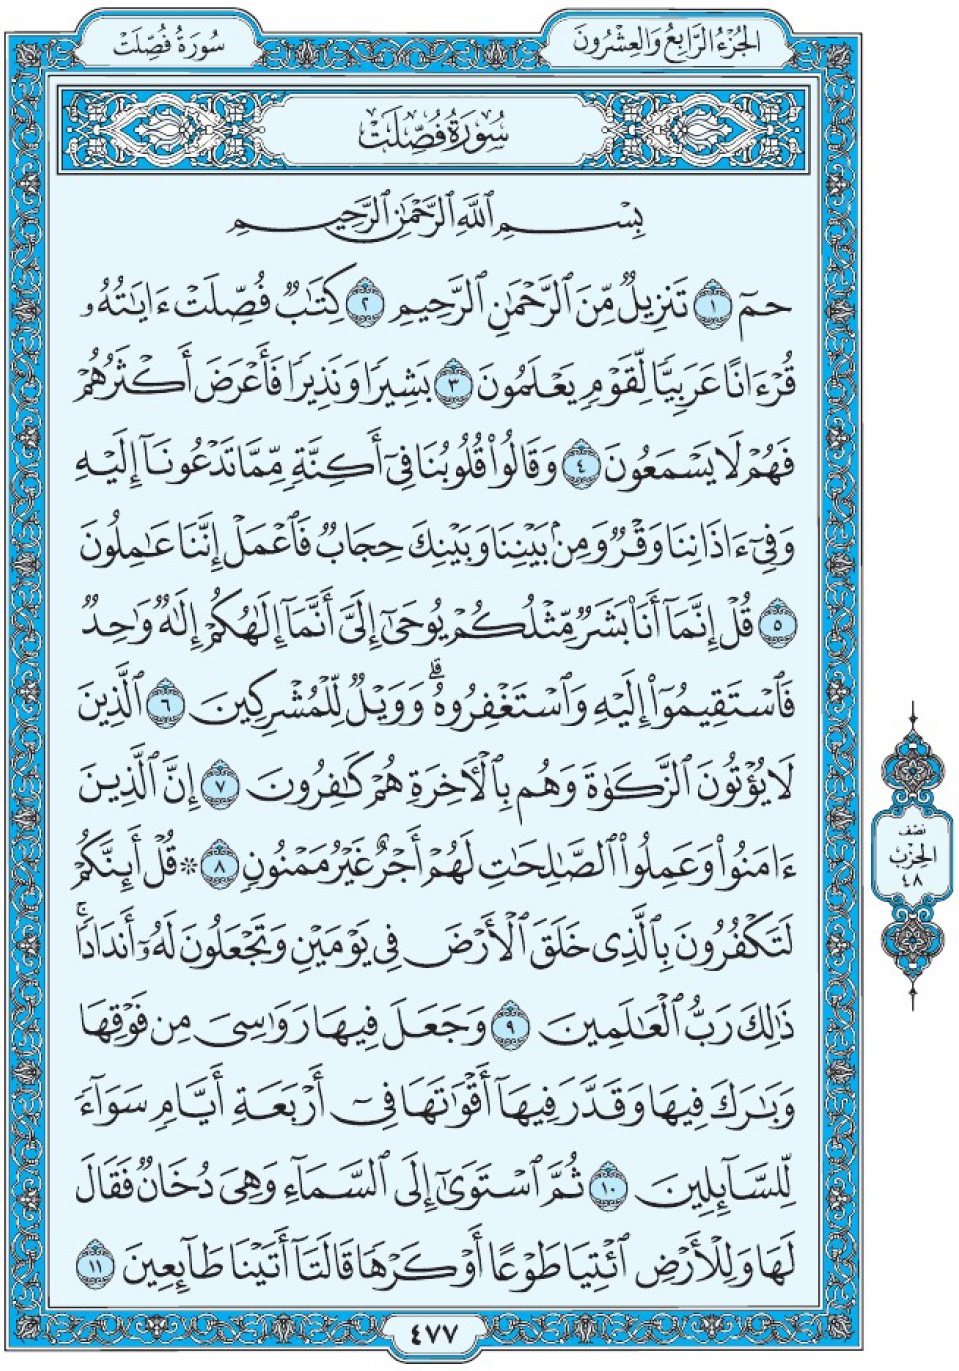 Коран Мединский мусхаф страница 477, сура 41 Фуссылят سورة ٤١ فصلت 